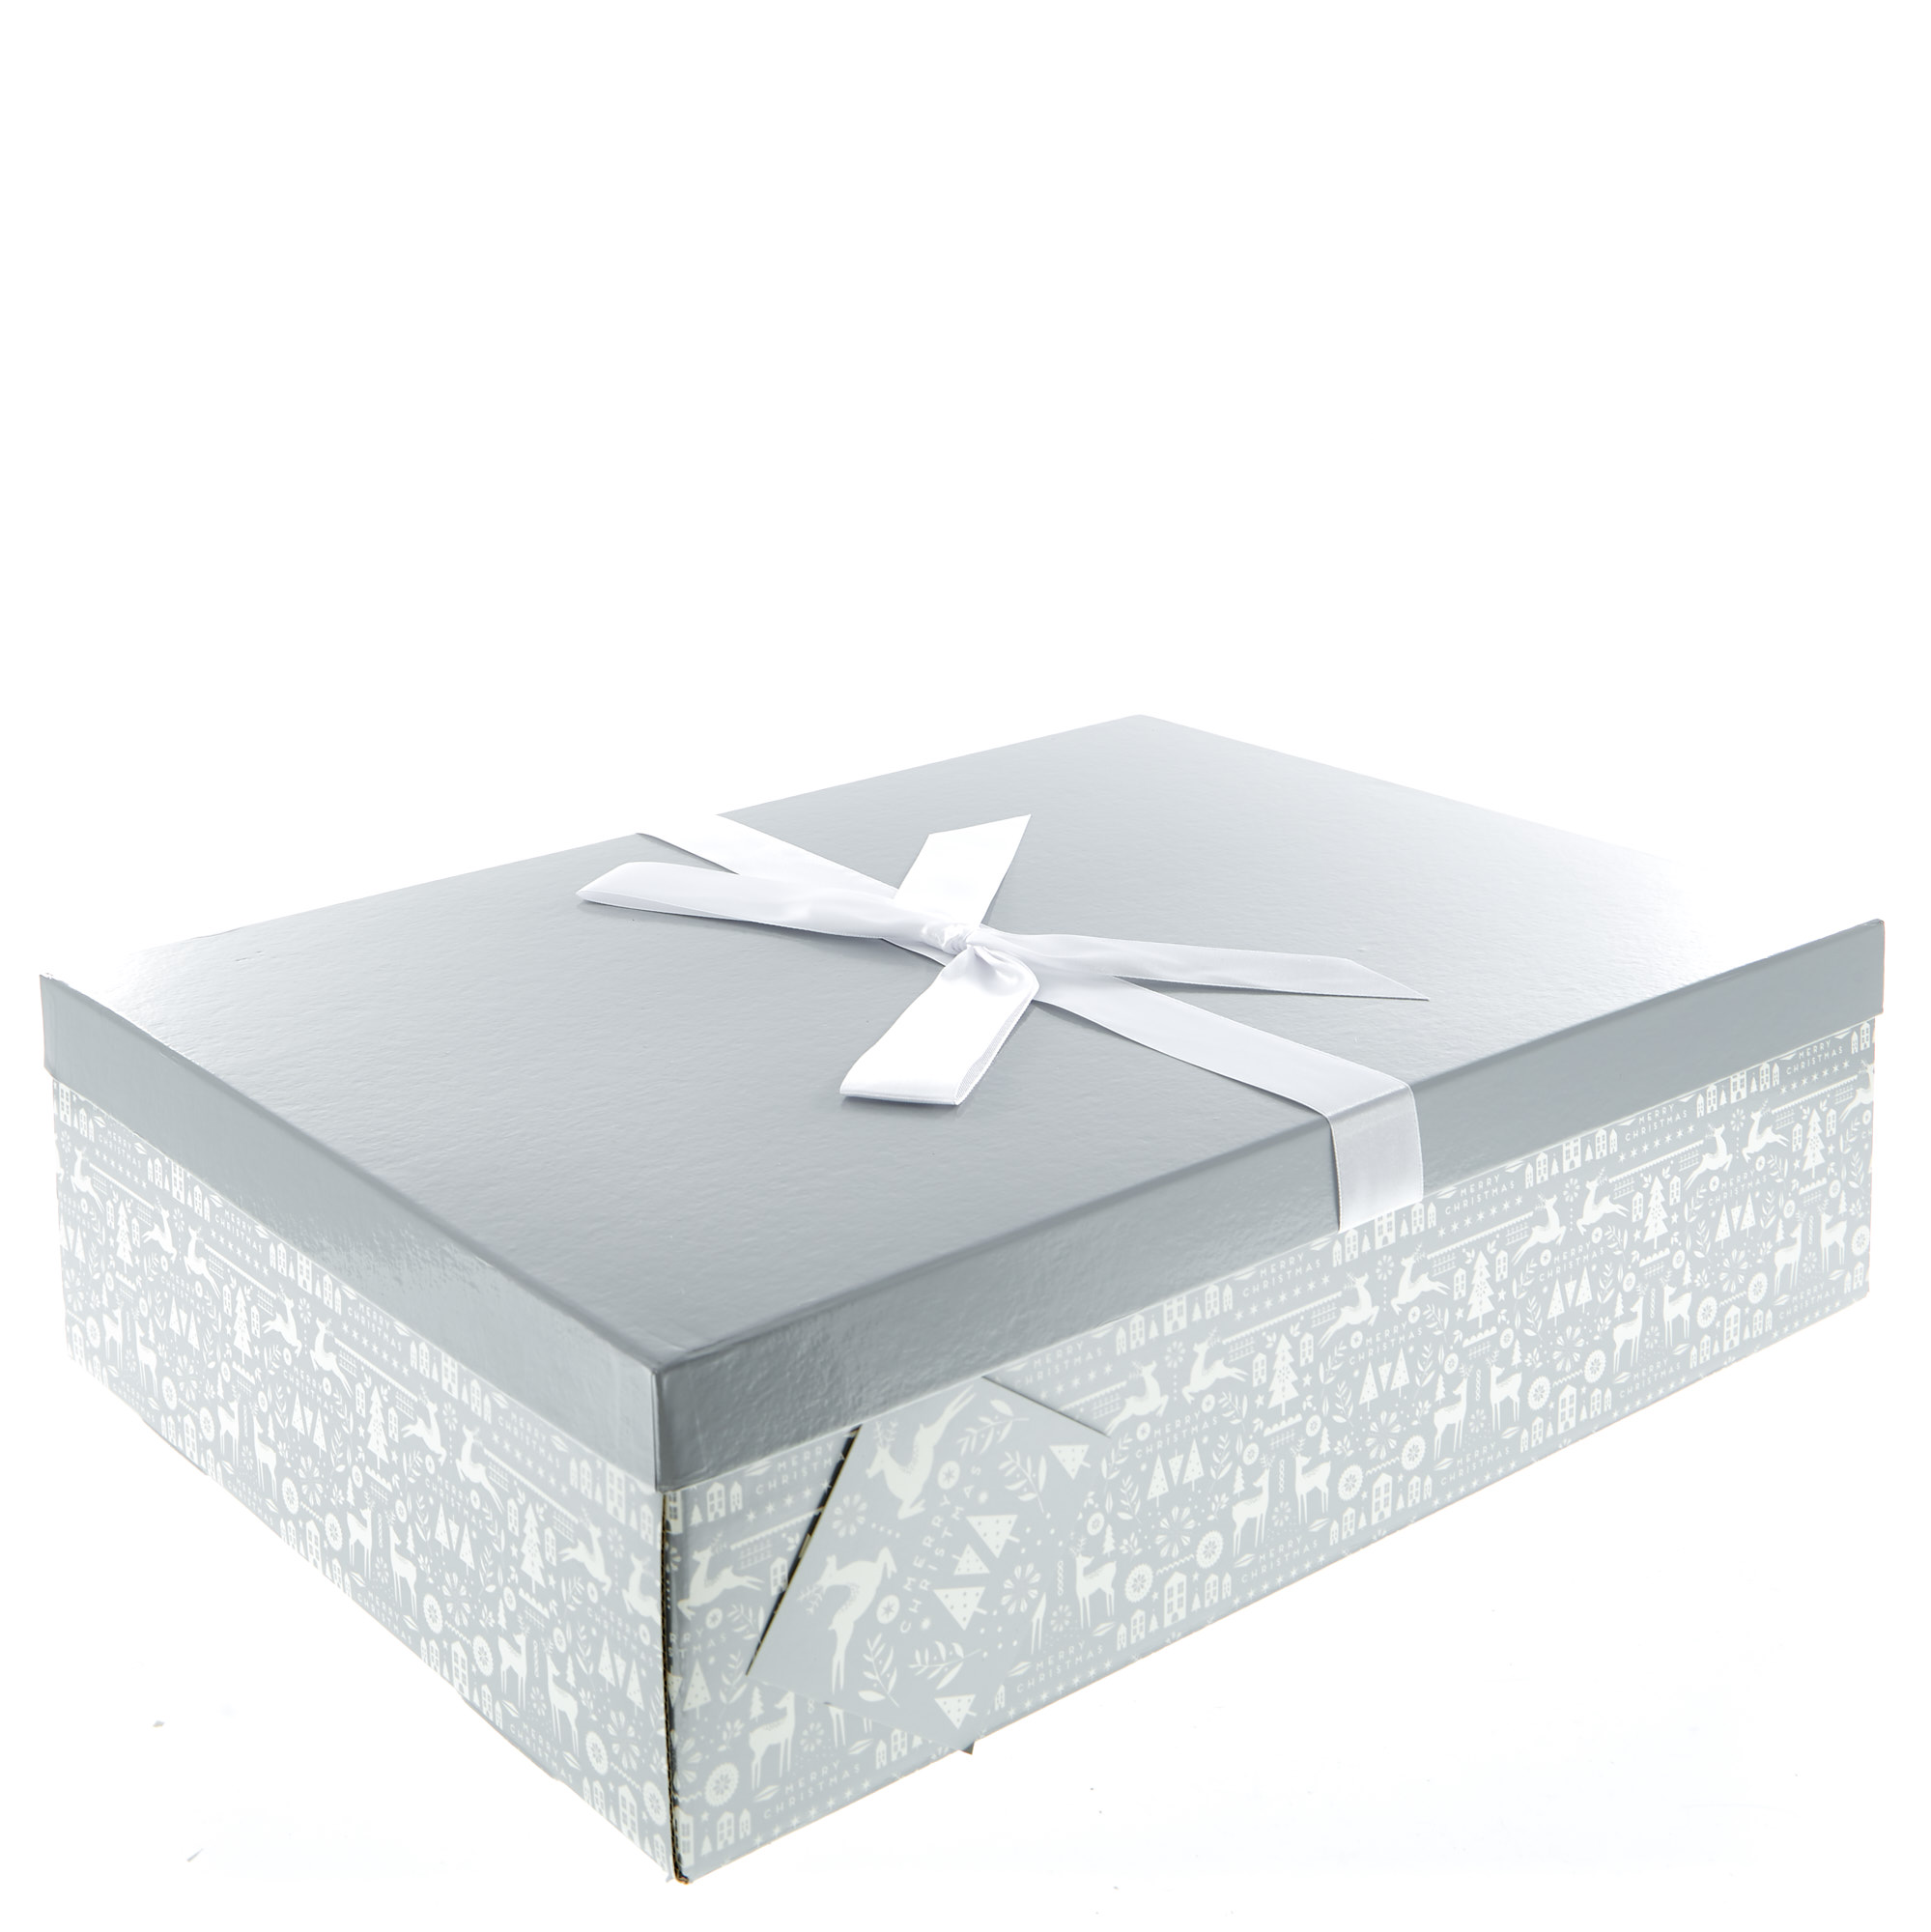 Coscia Esistenza Monna Lisa card factory gift boxes così Dedurre